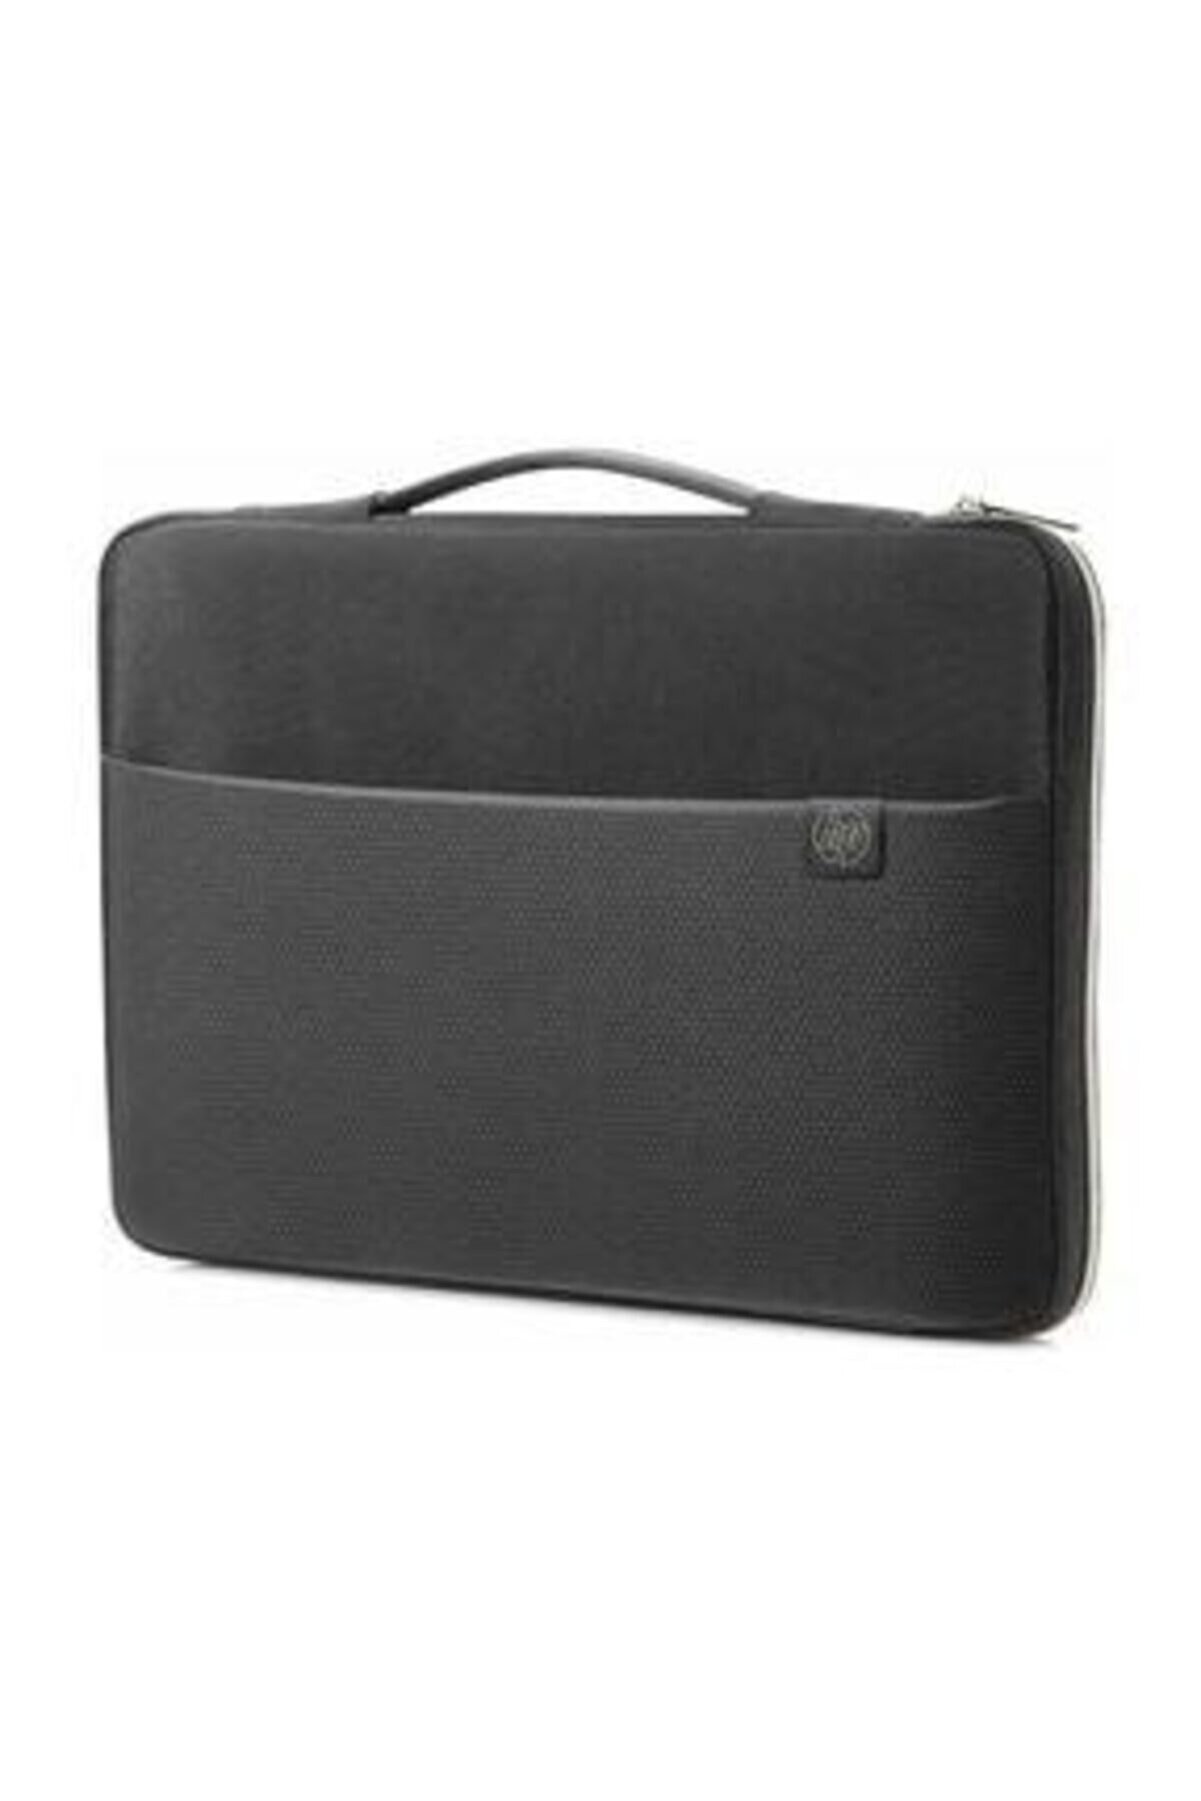 HP Siyah 15.6" Carry Sleeve Notebook Taşıma Kılıfı 3xd35aa